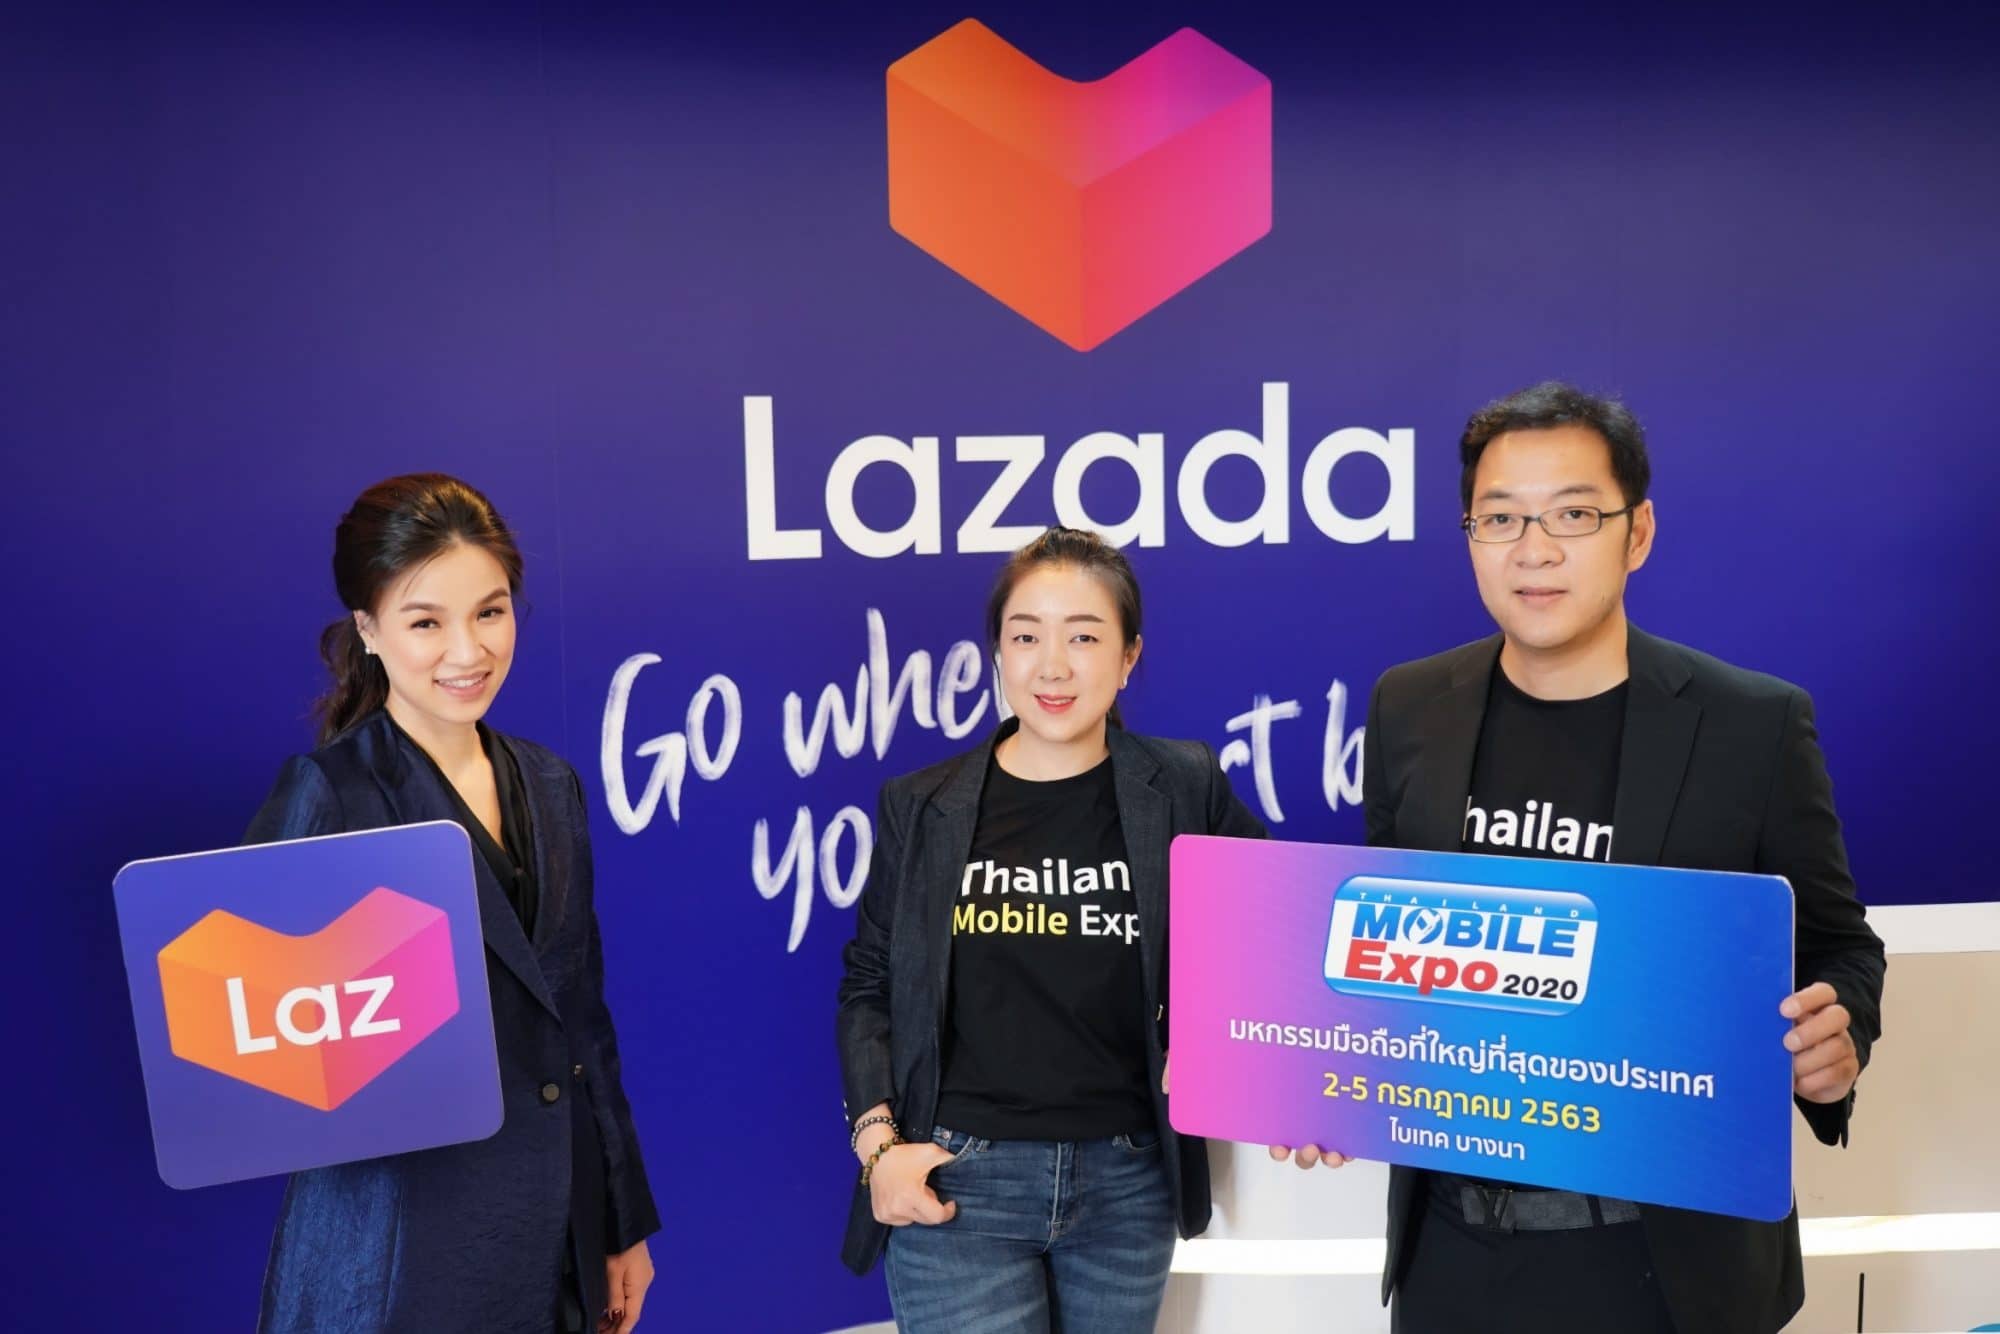 ‘ลาซาด้า’ ผนึกกำลัง ‘เอ็มวิชั่น’ จัดงาน ‘Thailand Mobile Expo 2020’ ช้อปออนไลน์ได้ทุกที่ทั่วไทย 24 ชั่วโมง เป็นครั้งแรก พร้อมแจกคูปองส่วนลดรวมกว่า 4 ล้านบาท 3